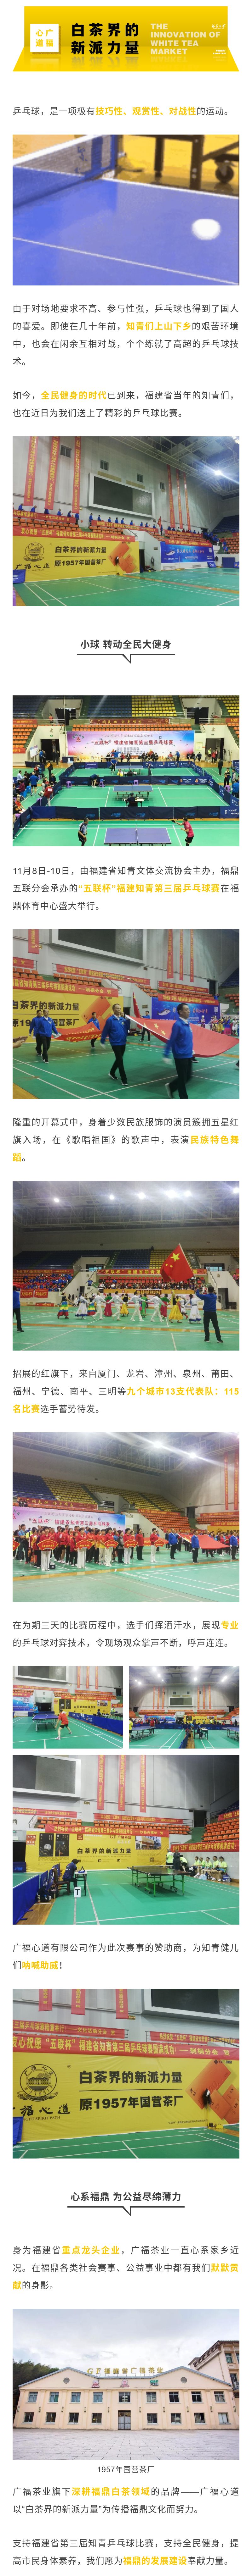 福建省第三届乒乓球比赛现场，广福心道为知青健儿们加油助威！|心动态(图1)